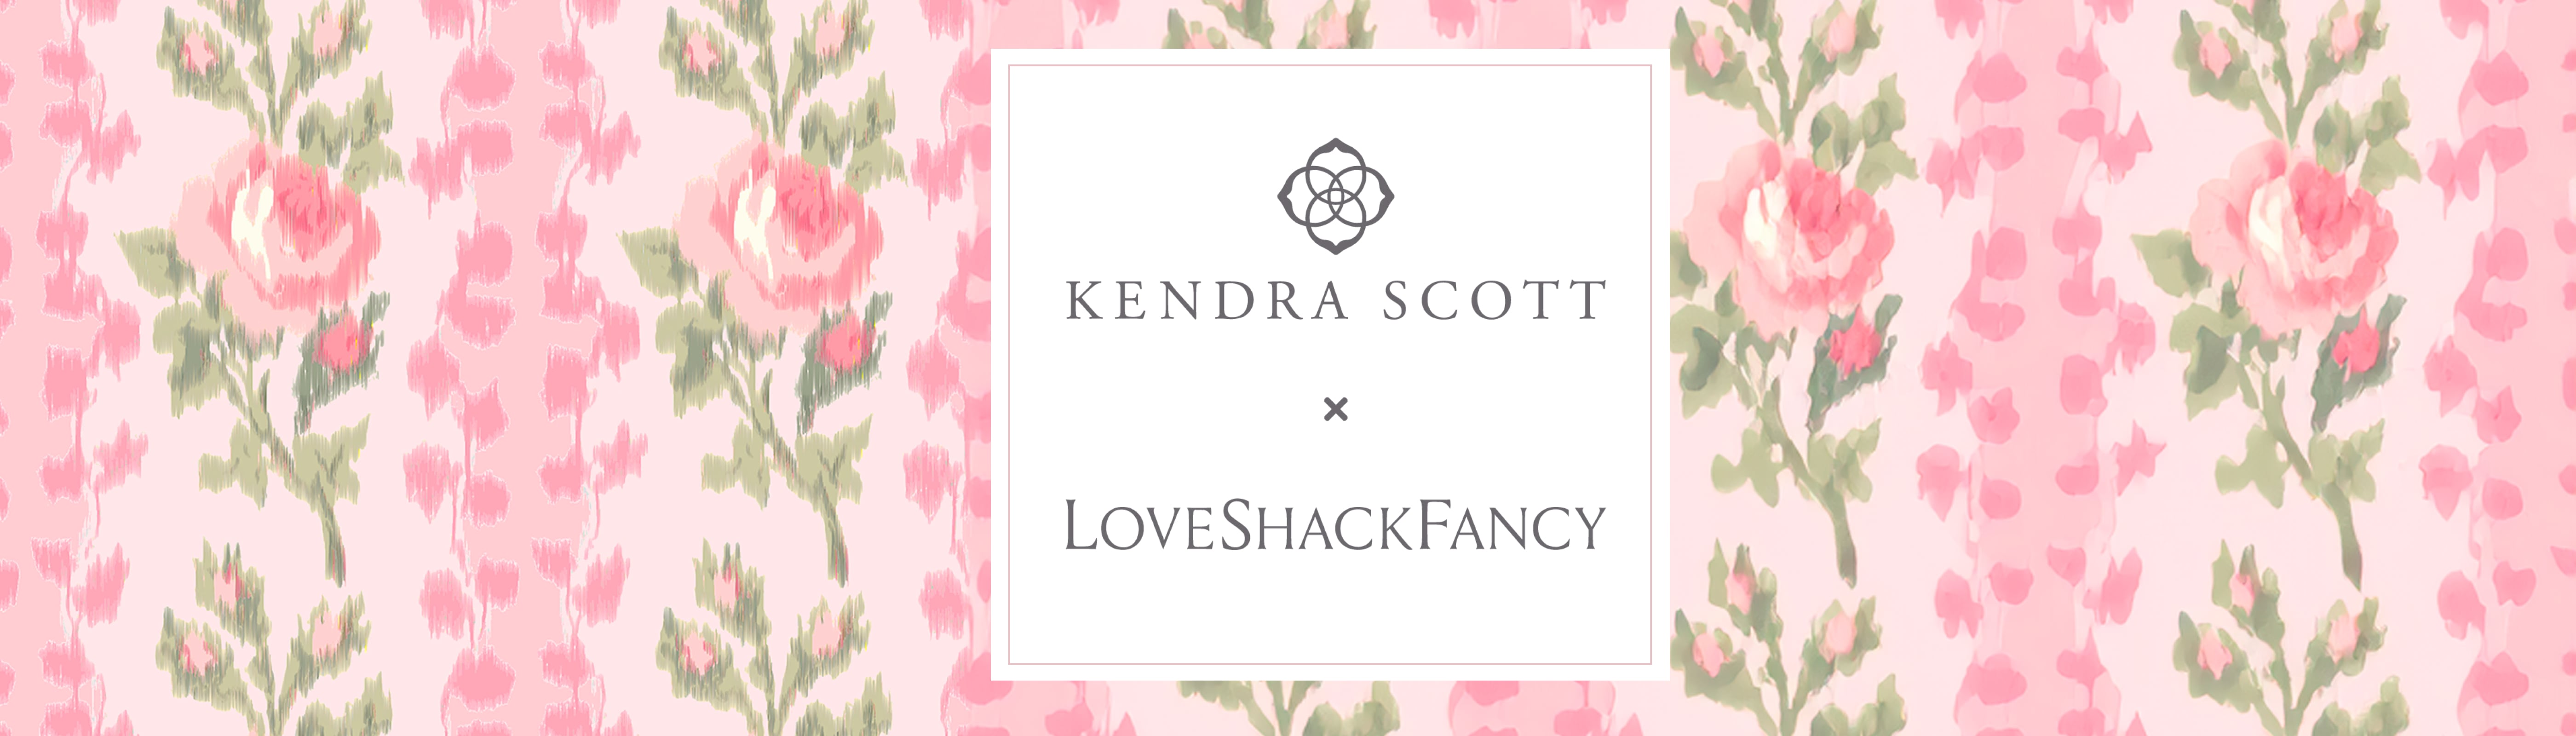 Kendra Scott x LoveShackFancy